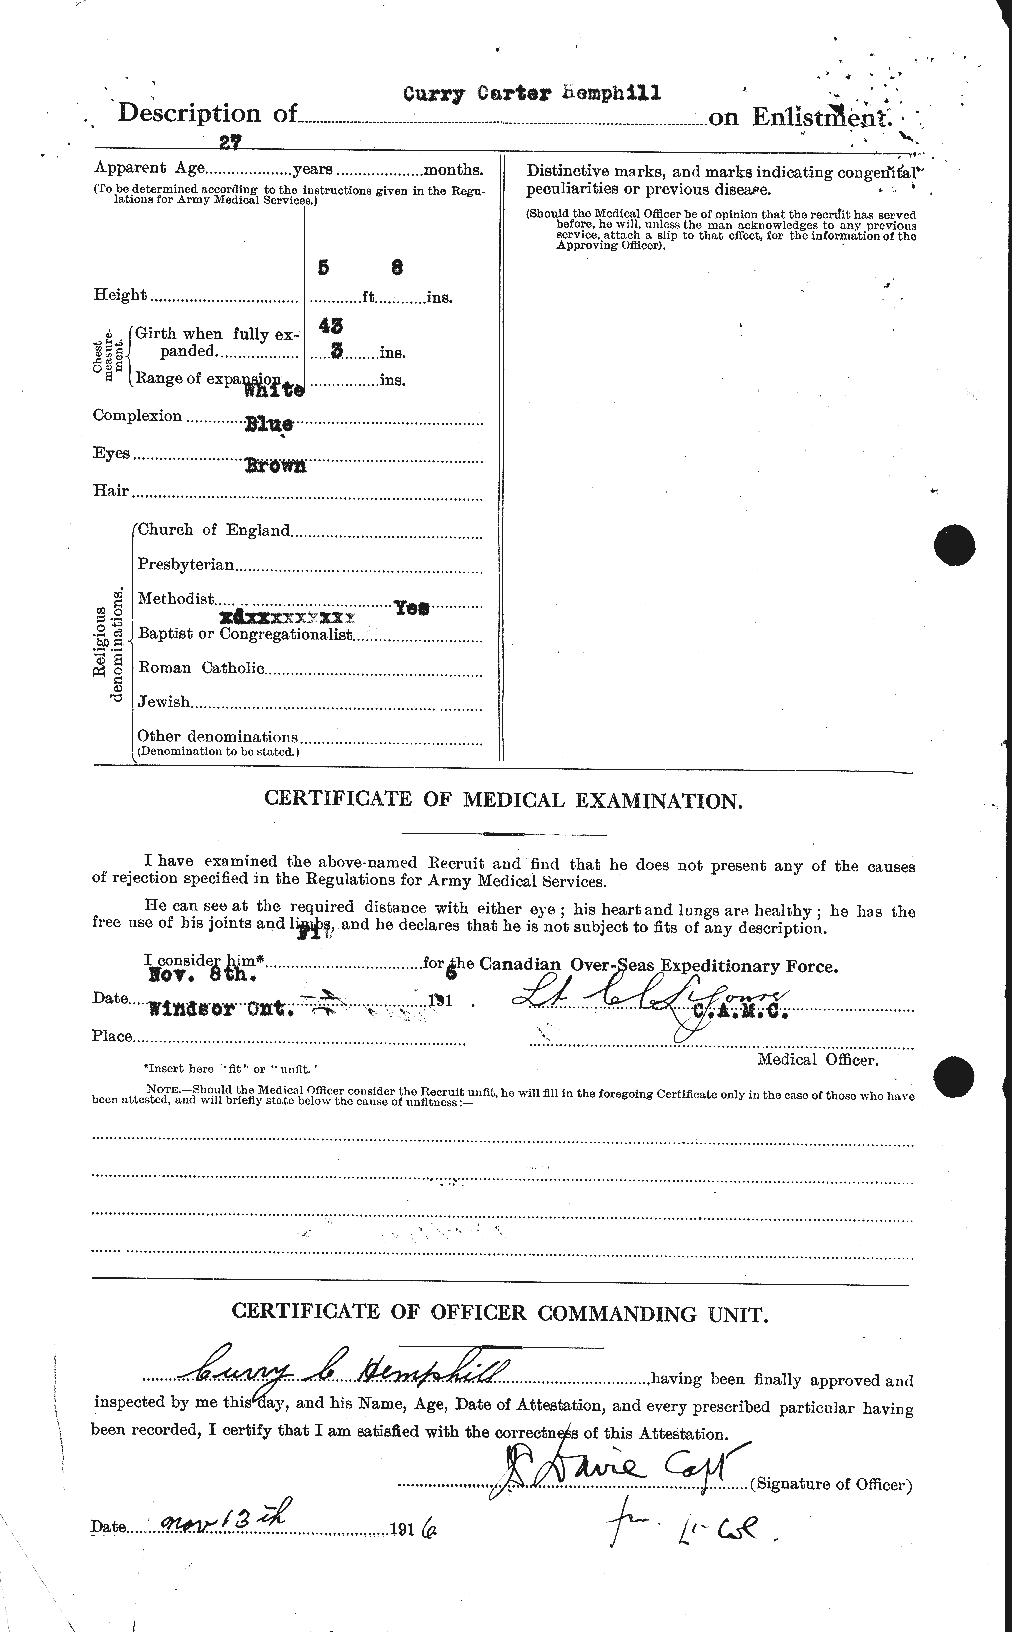 Dossiers du Personnel de la Première Guerre mondiale - CEC 385274b